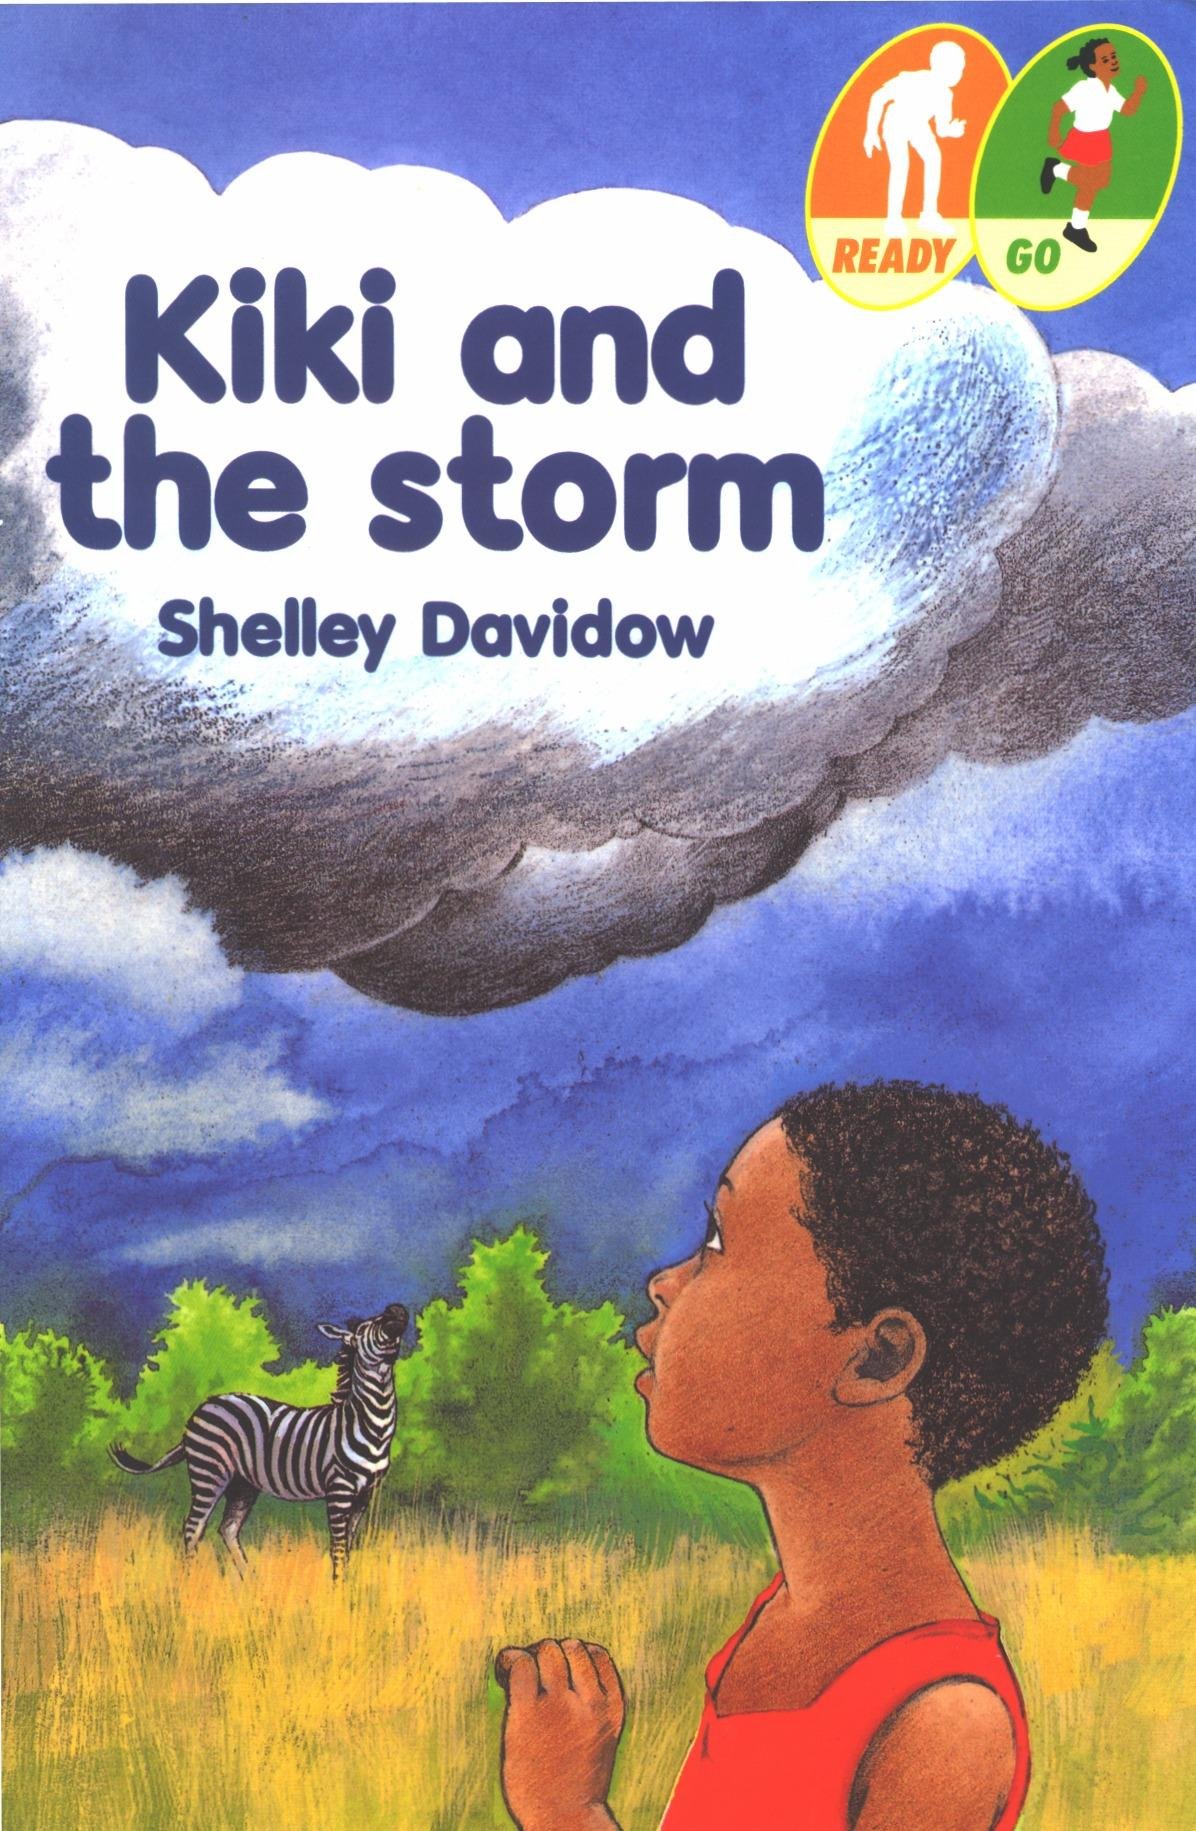 Kiki The Storm by Shelley Davidow